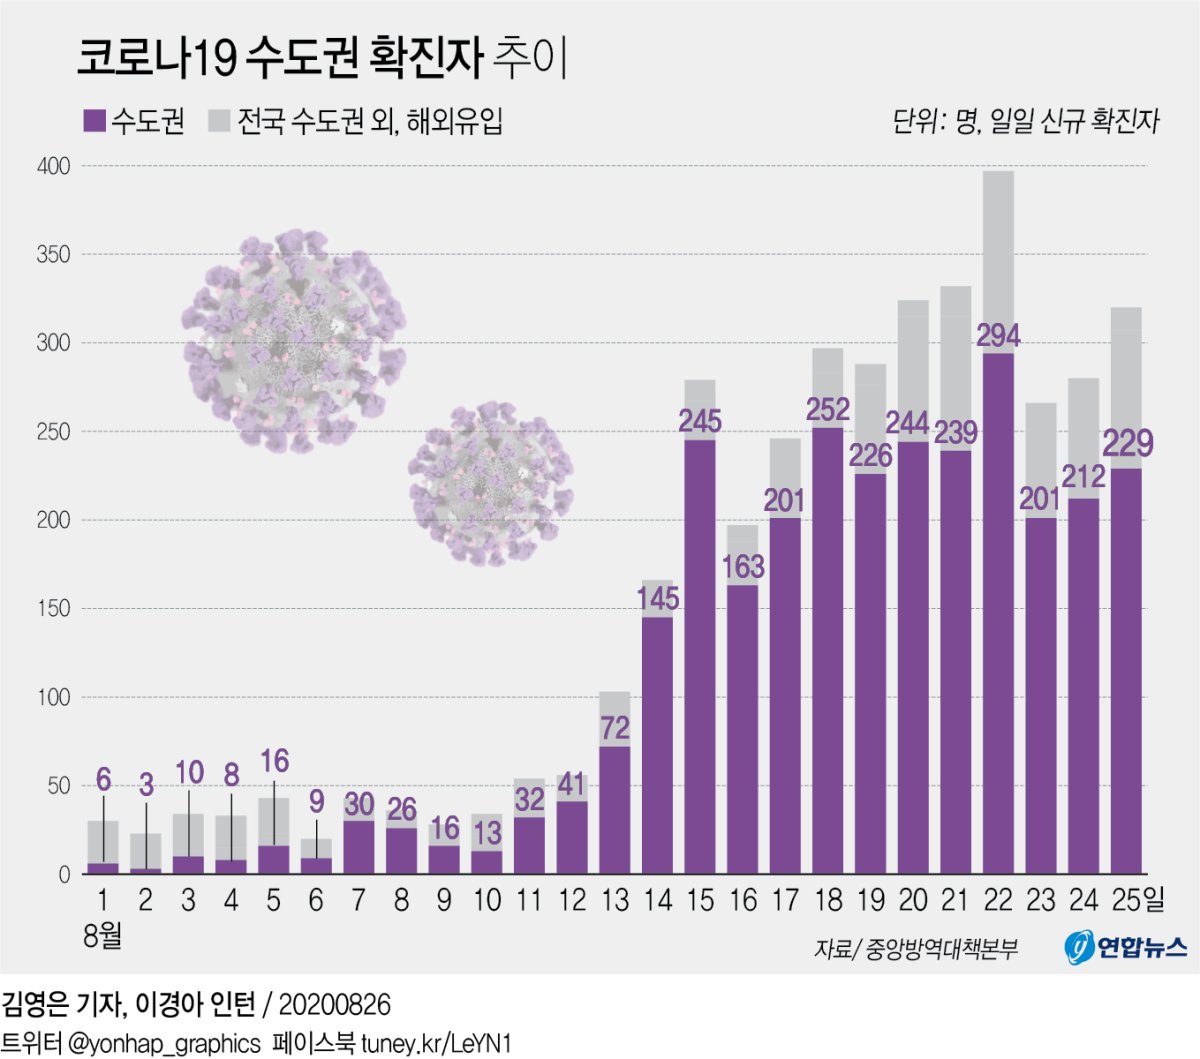 (شامل) كوريا الجنوبية تسجل 320 حالة إصابة جديدة بفيروس كورونا، منها 237 في سيئول وضواحيها - 3